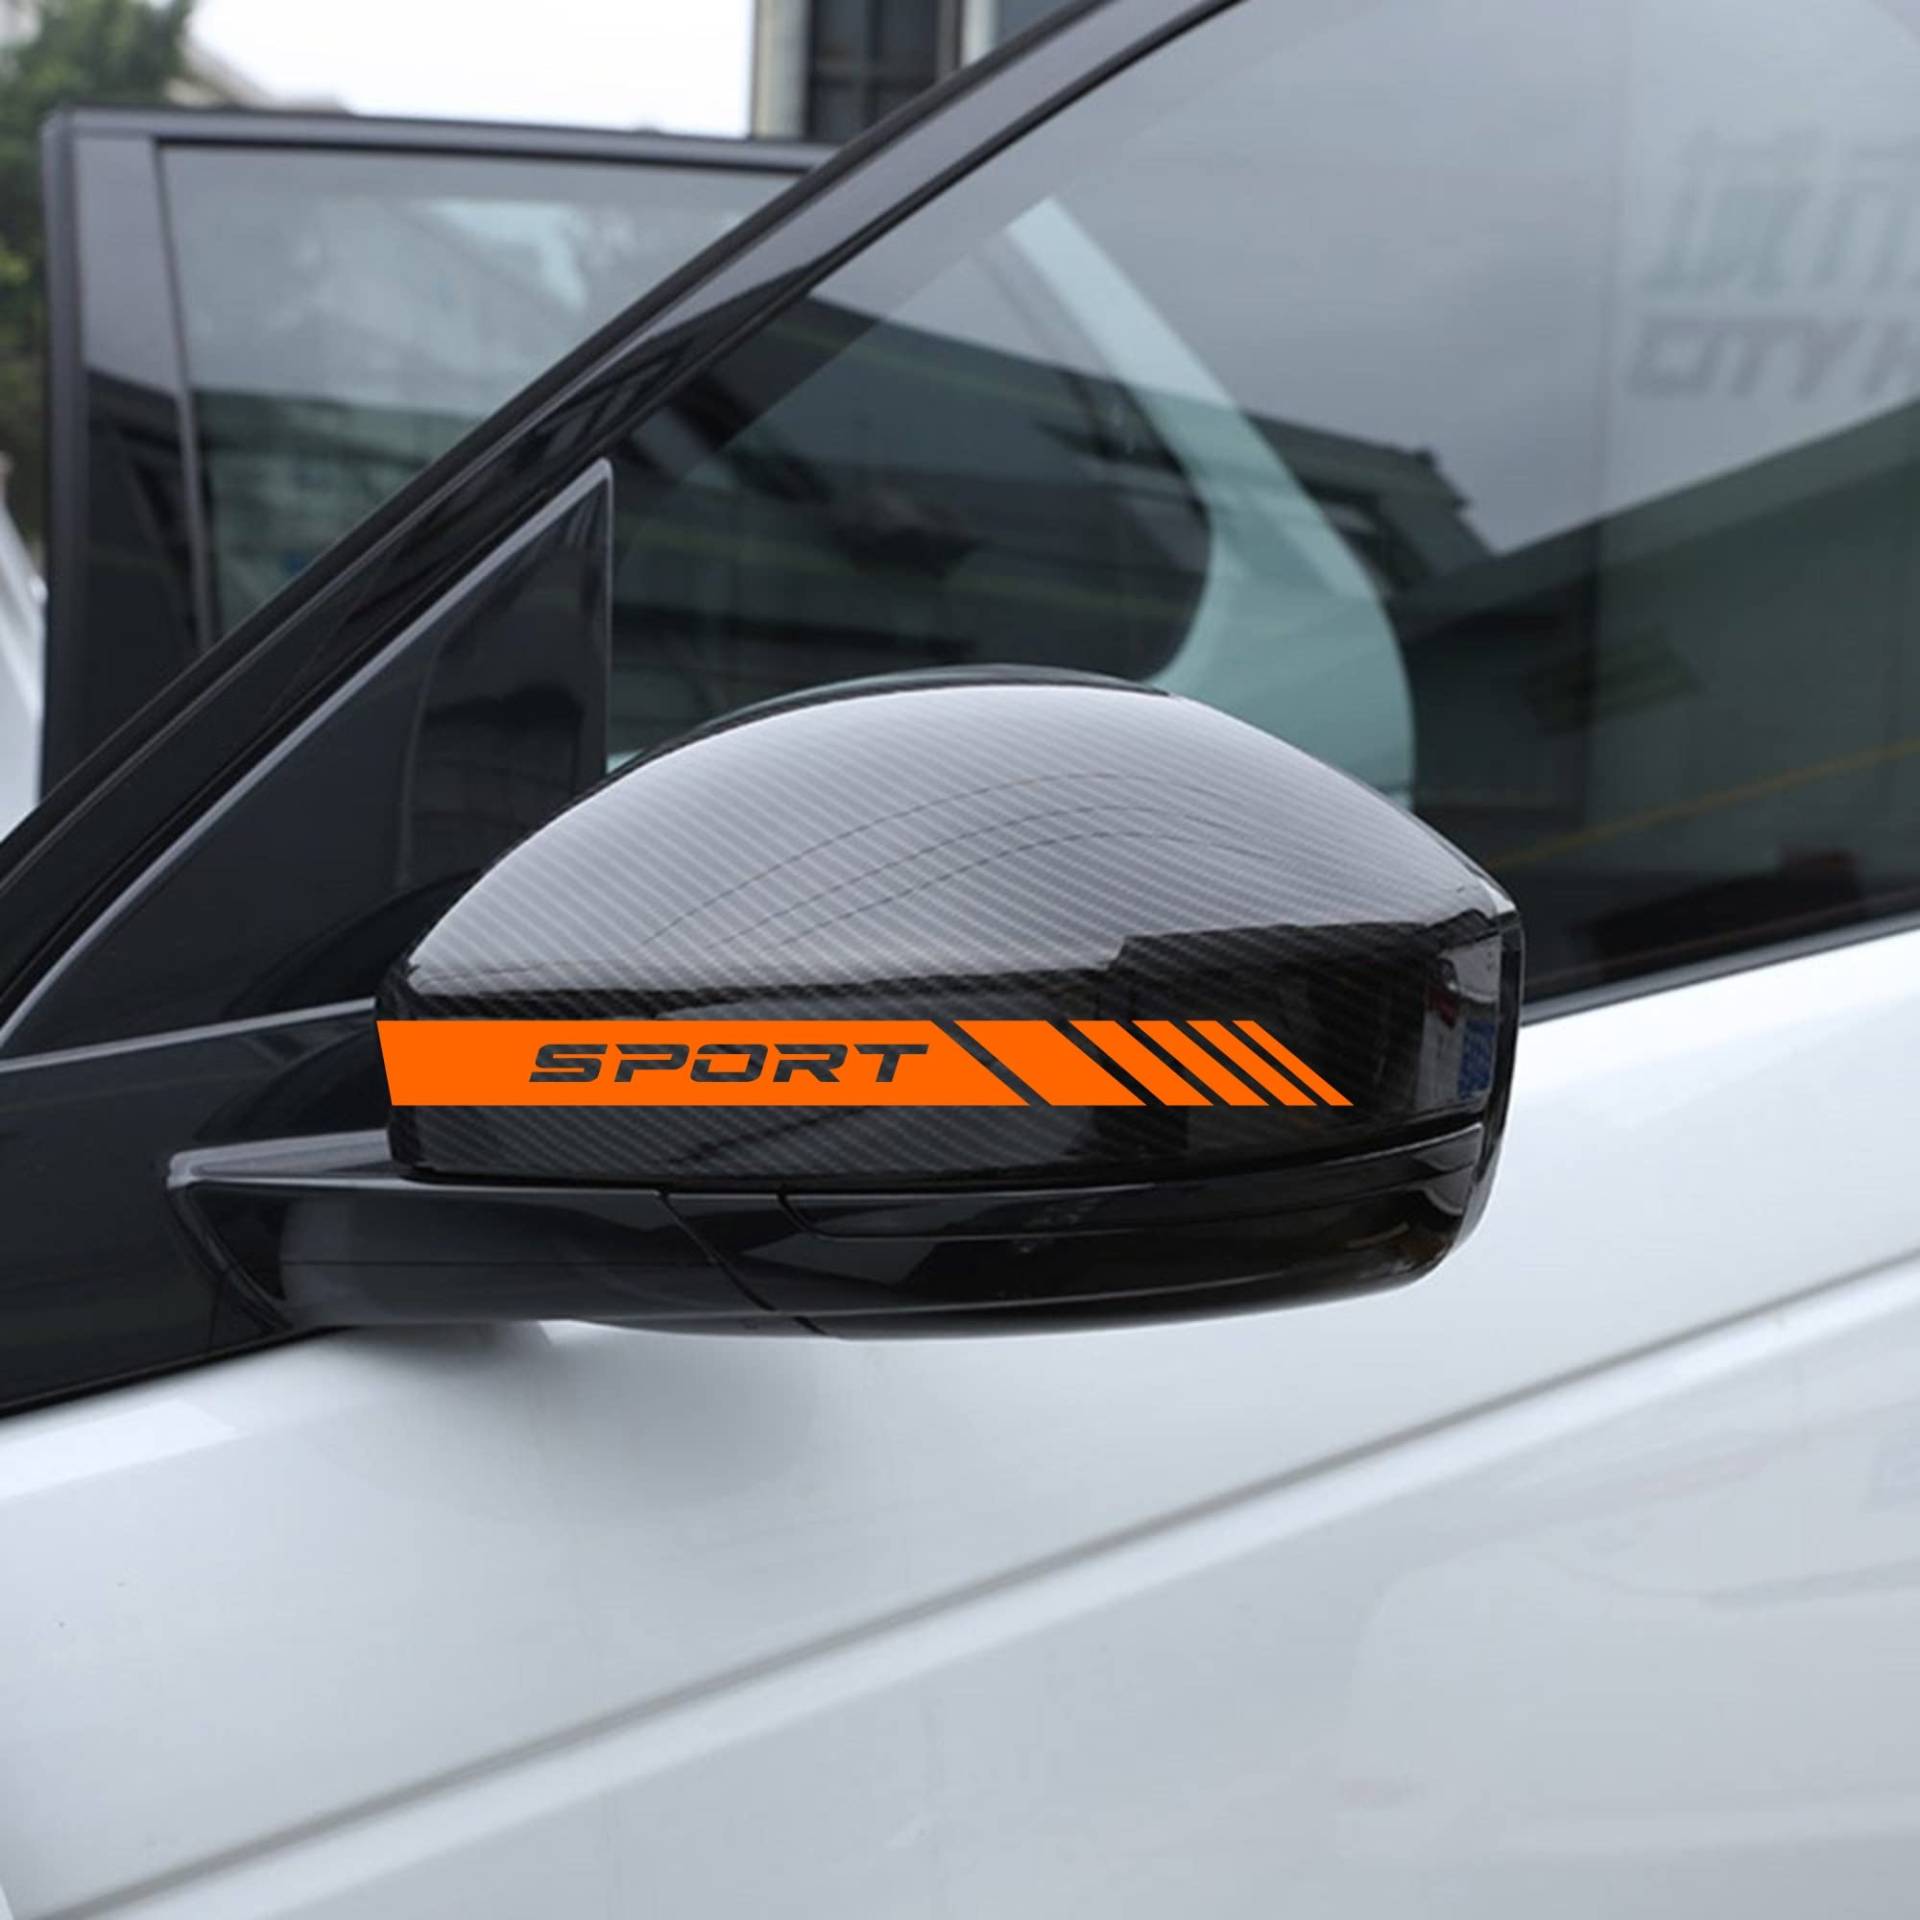 AUTODOMY Rückspiegel Aufkleber Stickers Auto mit Streifen Design Stripes Tuning Packet mit 6 Einheiten mit unterschiedlichen Breiten Sportdesign für das Auto (Orange) von AUTODOMY